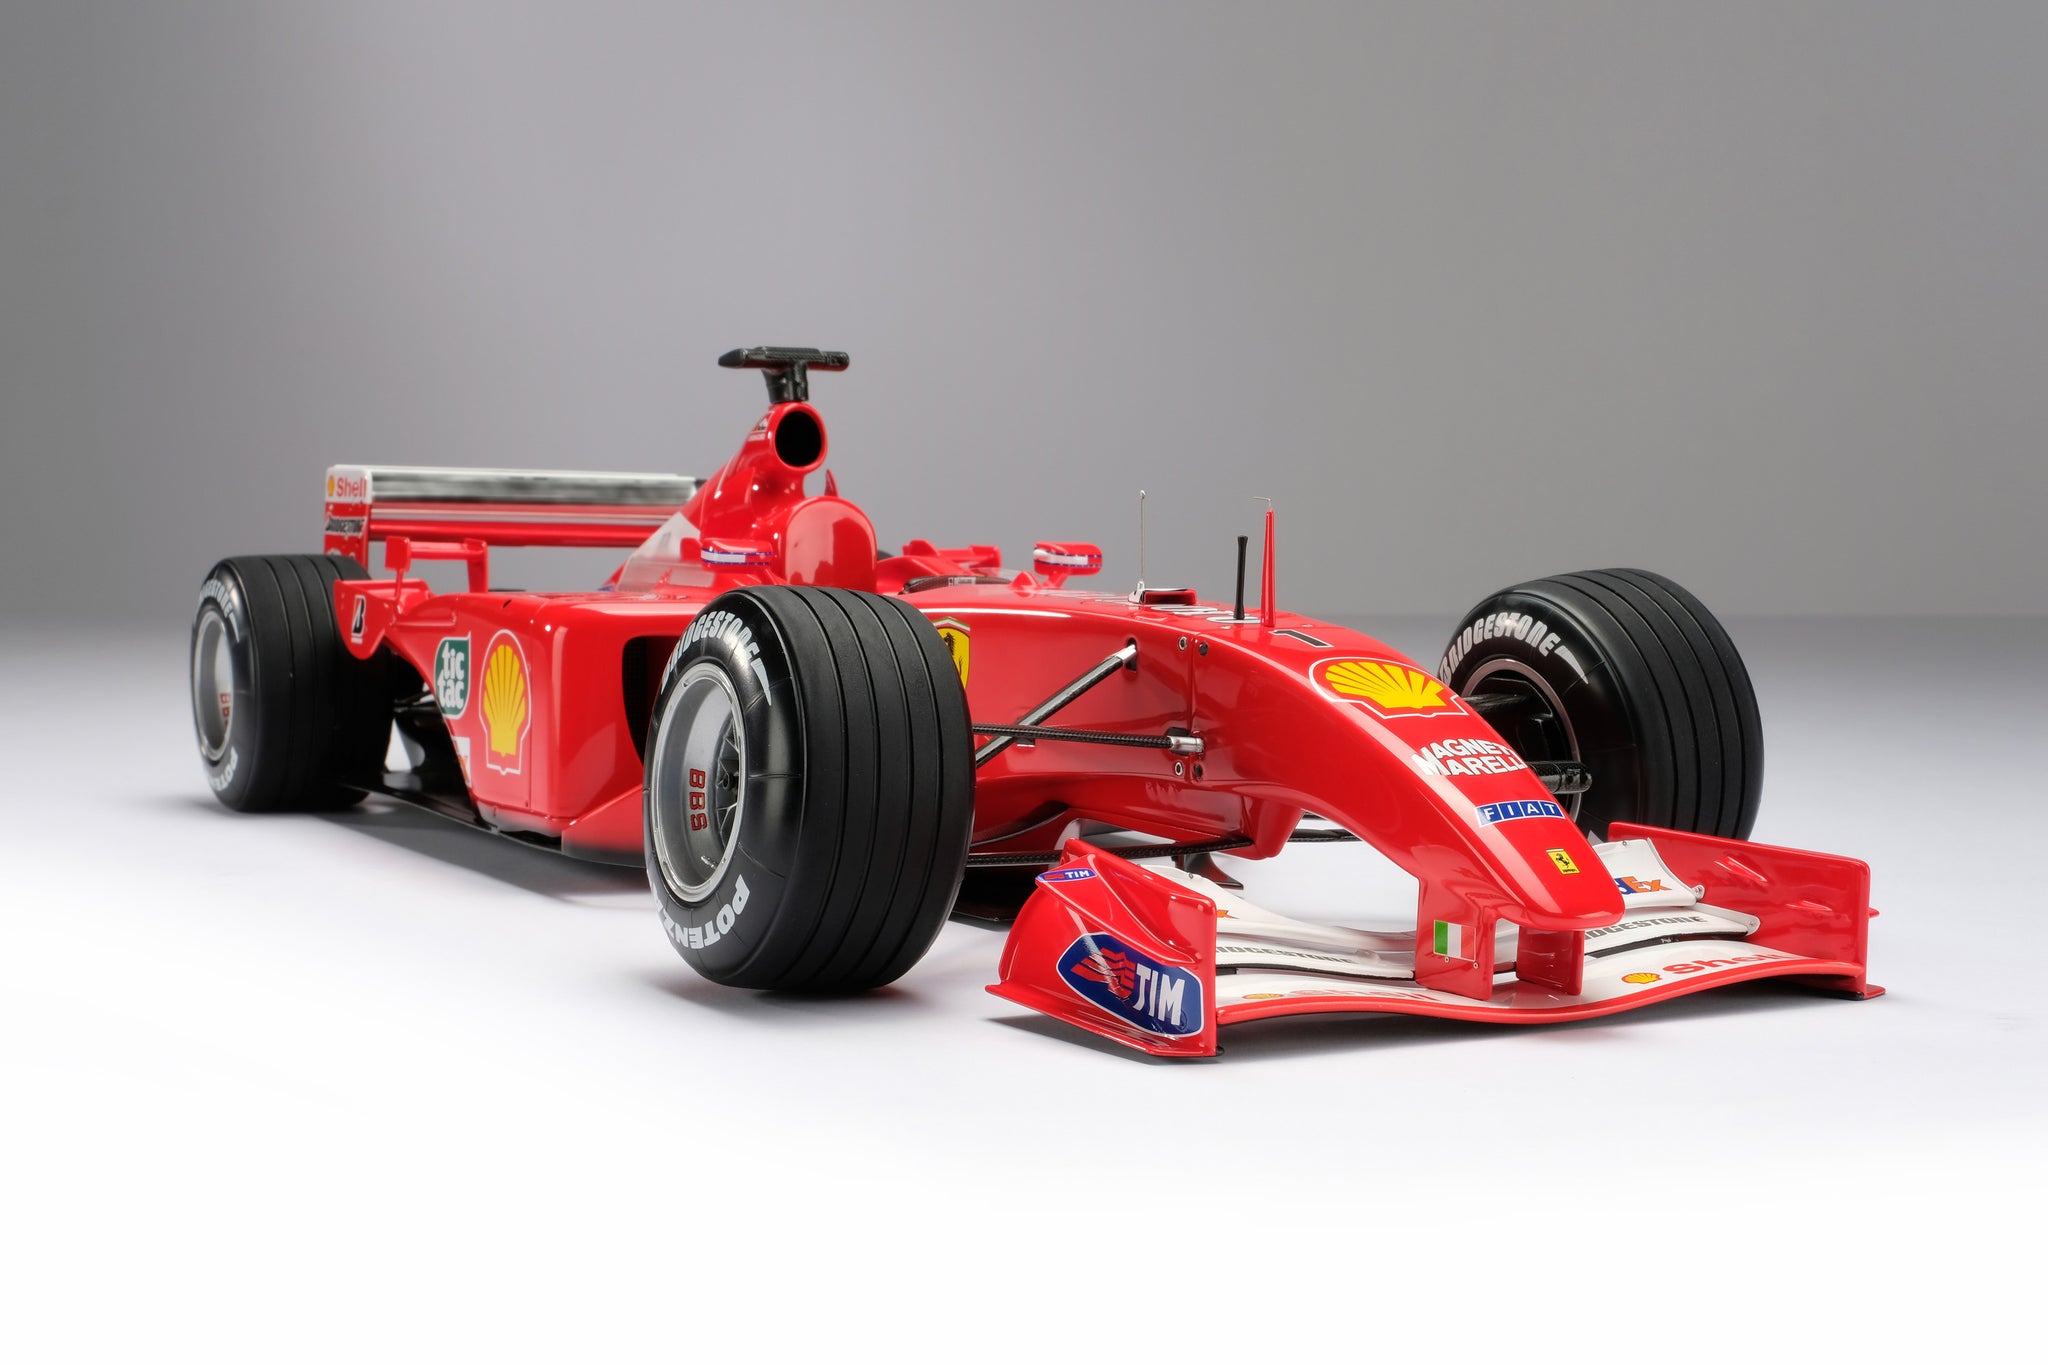 Ferrari F2001 at 1:8 scale